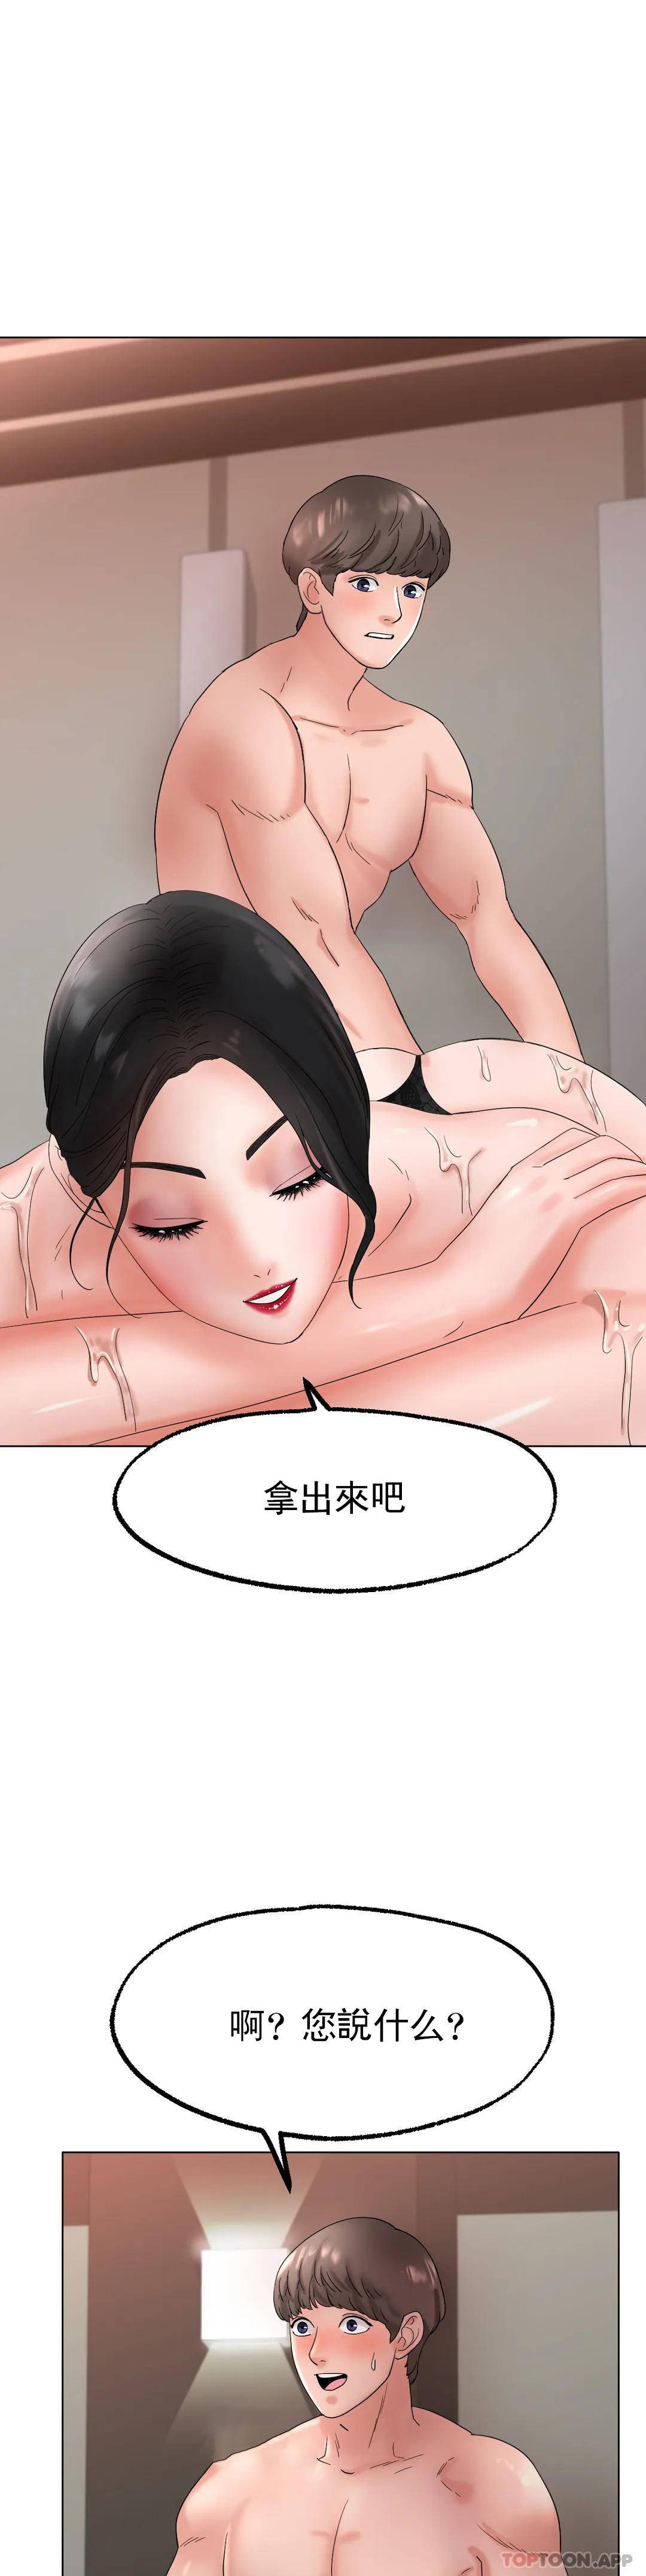 韩国污漫画 冰上的愛 第11话好想快点尝尝... 45